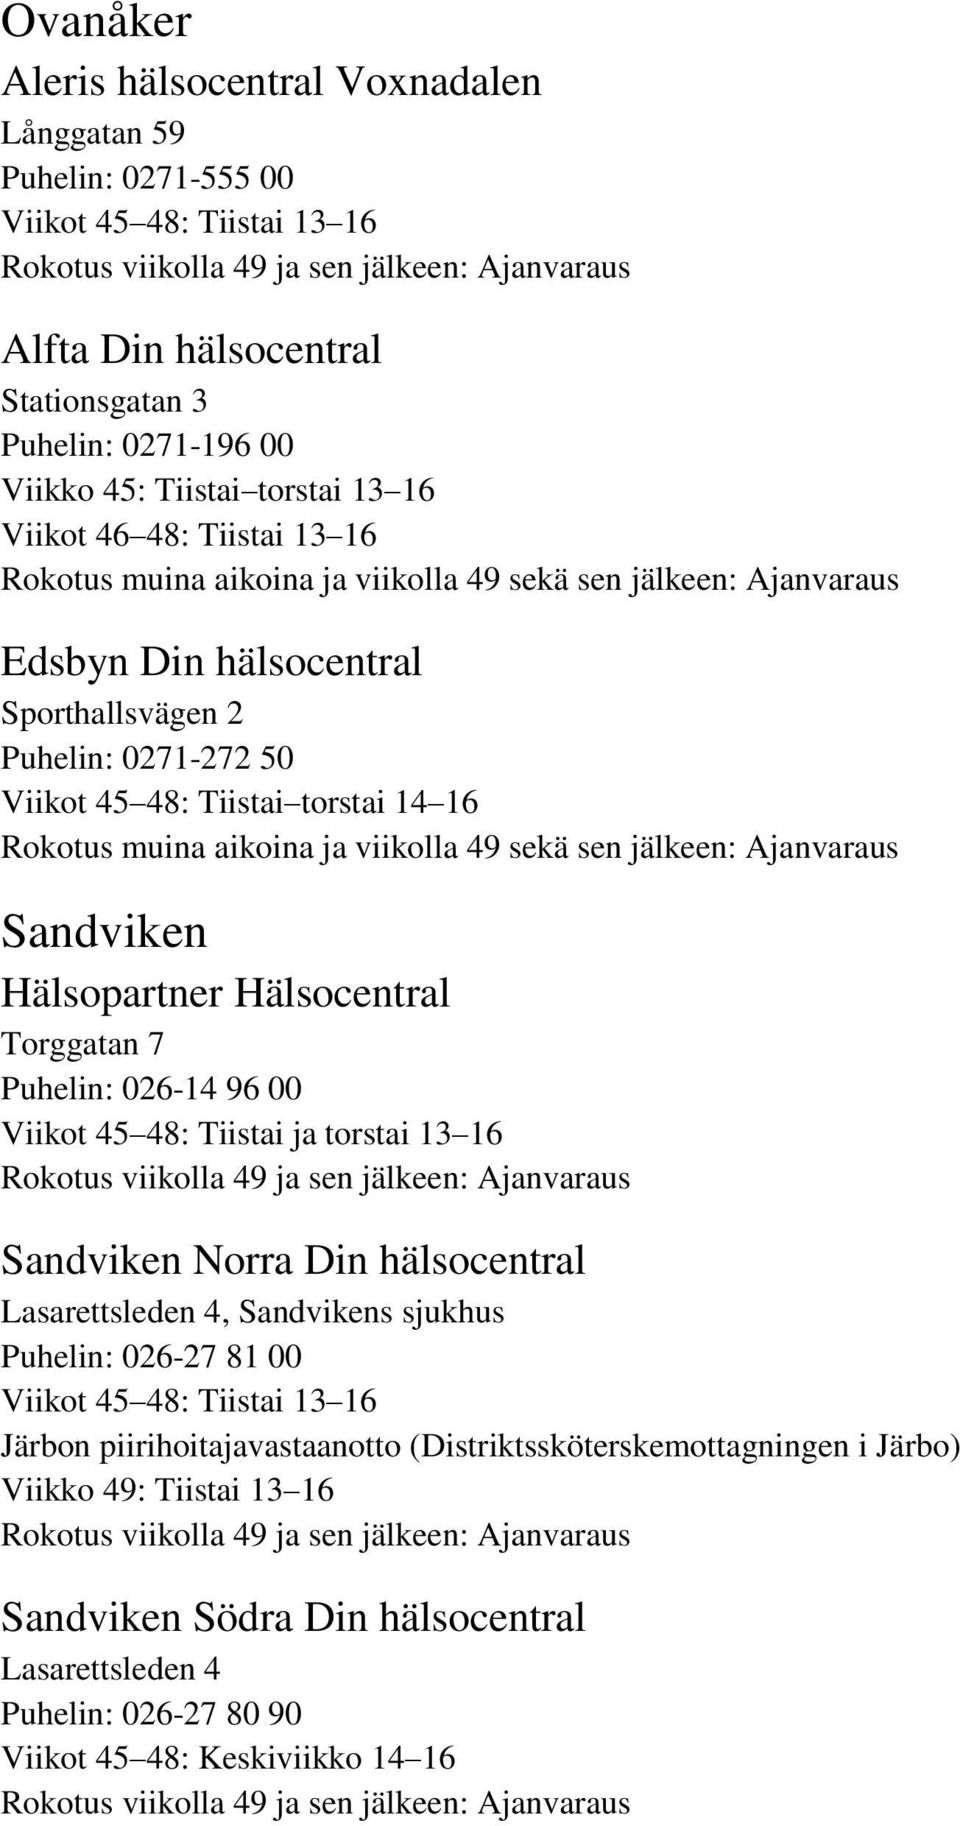 Rokotus muina aikoina ja viikolla 49 sekä sen jälkeen: Ajanvaraus Sandviken Hälsopartner Hälsocentral Torggatan 7 Puhelin: 026-14 96 00 Sandviken Norra Din hälsocentral Lasarettsleden 4, Sandvikens